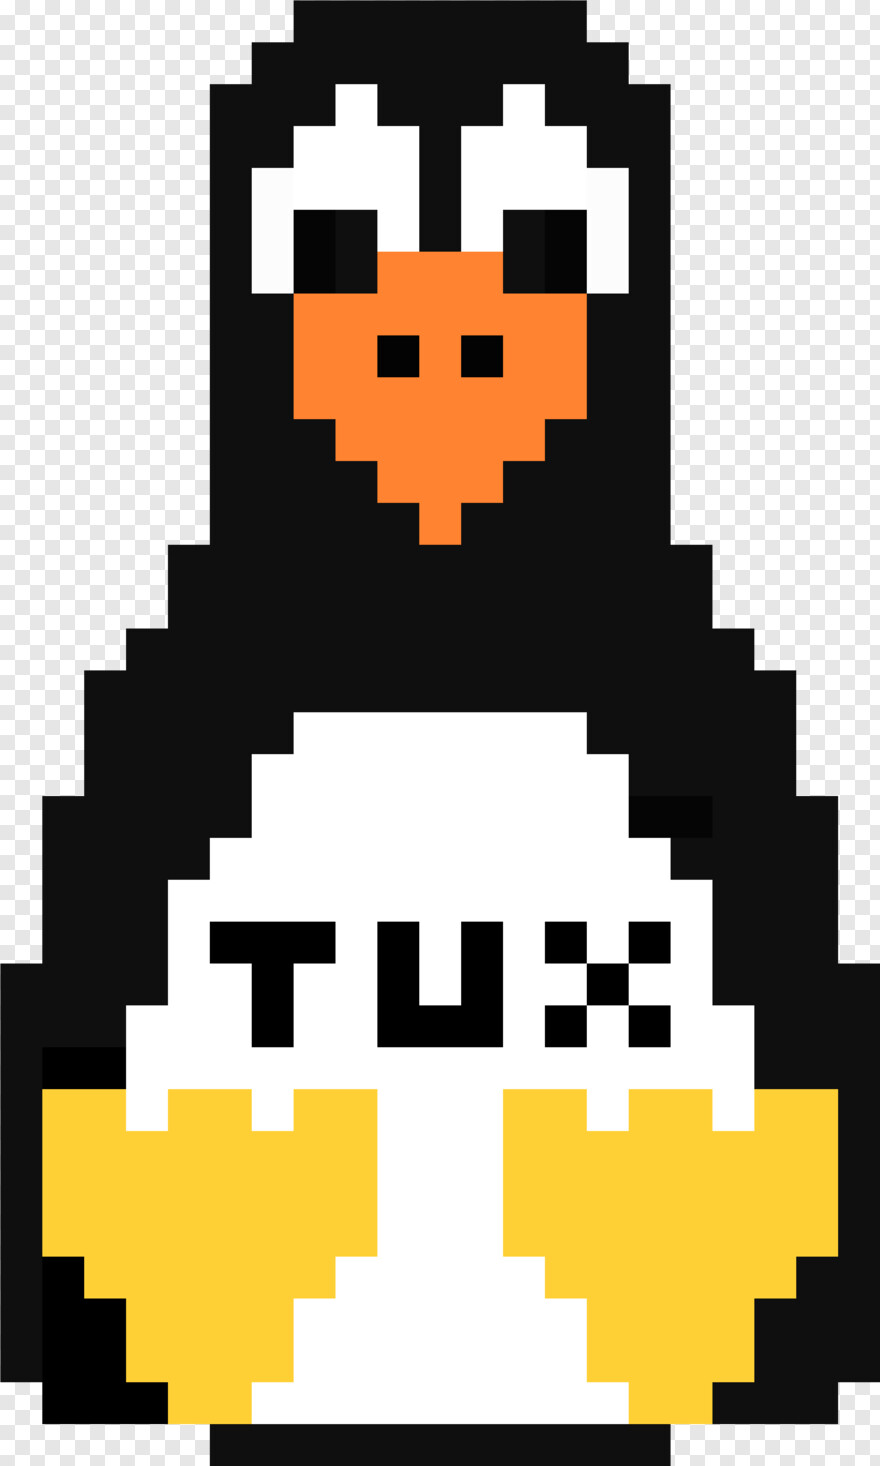 Linux Пингвин пиксельный